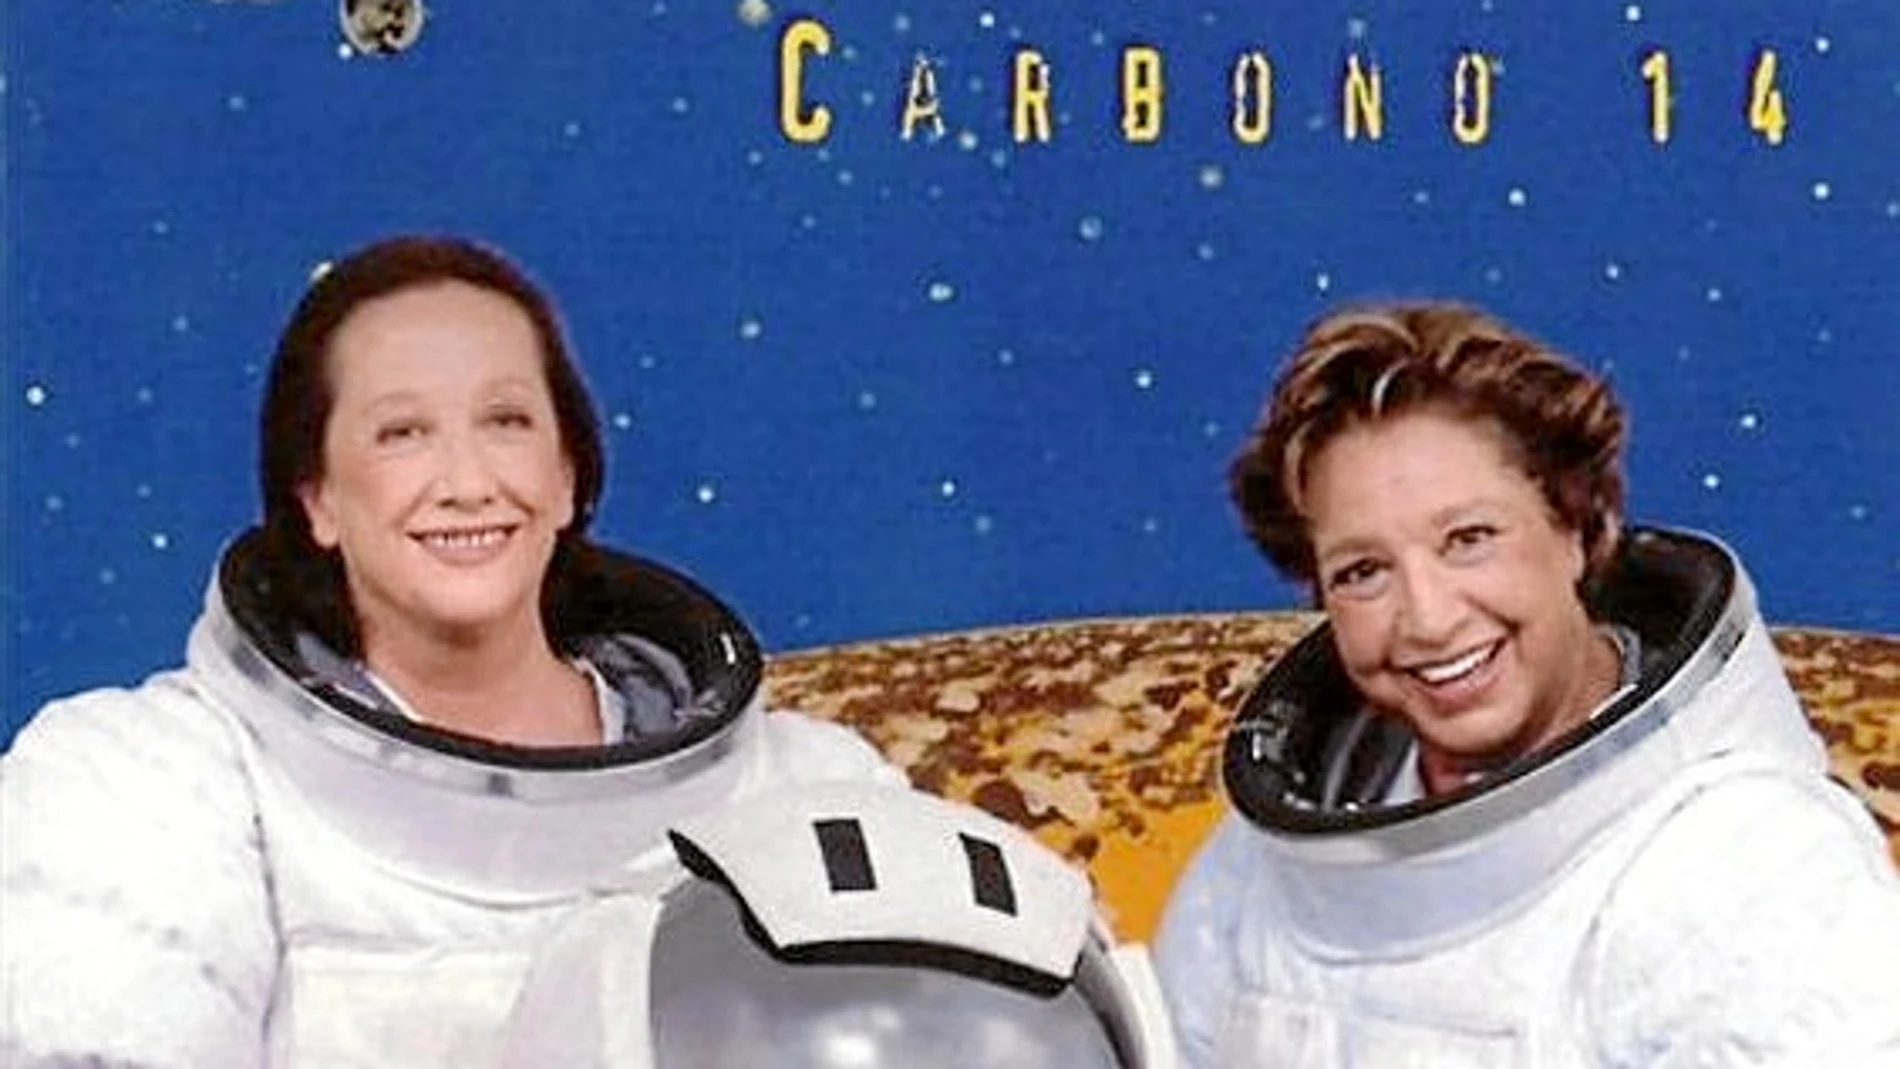 La portada de «Carbono 14», como todo el disco, se salía de lo normal